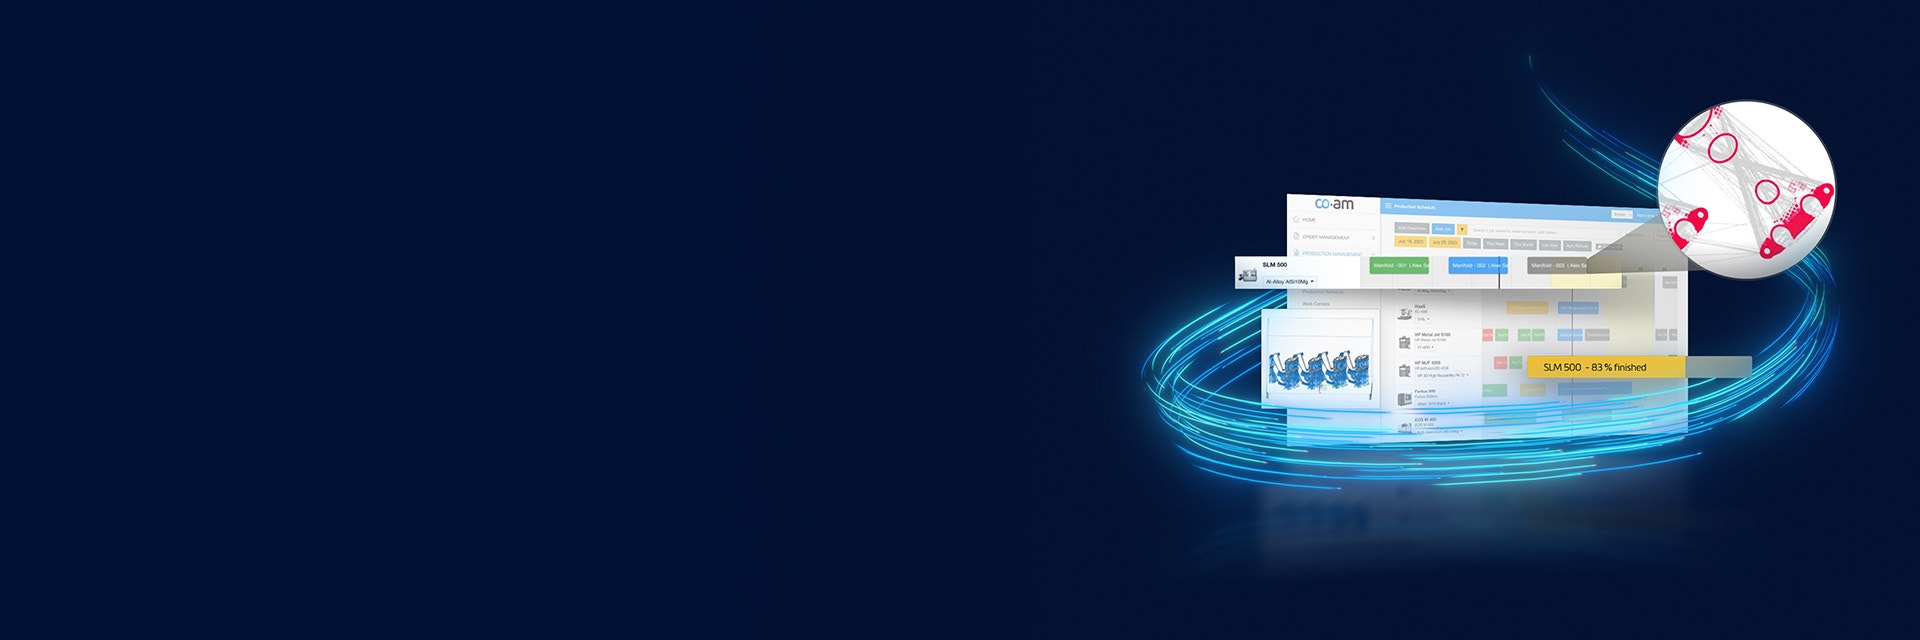 显示 CO-AM 软件的屏幕，弹出不同的字段，并有霓虹灯蓝线环绕